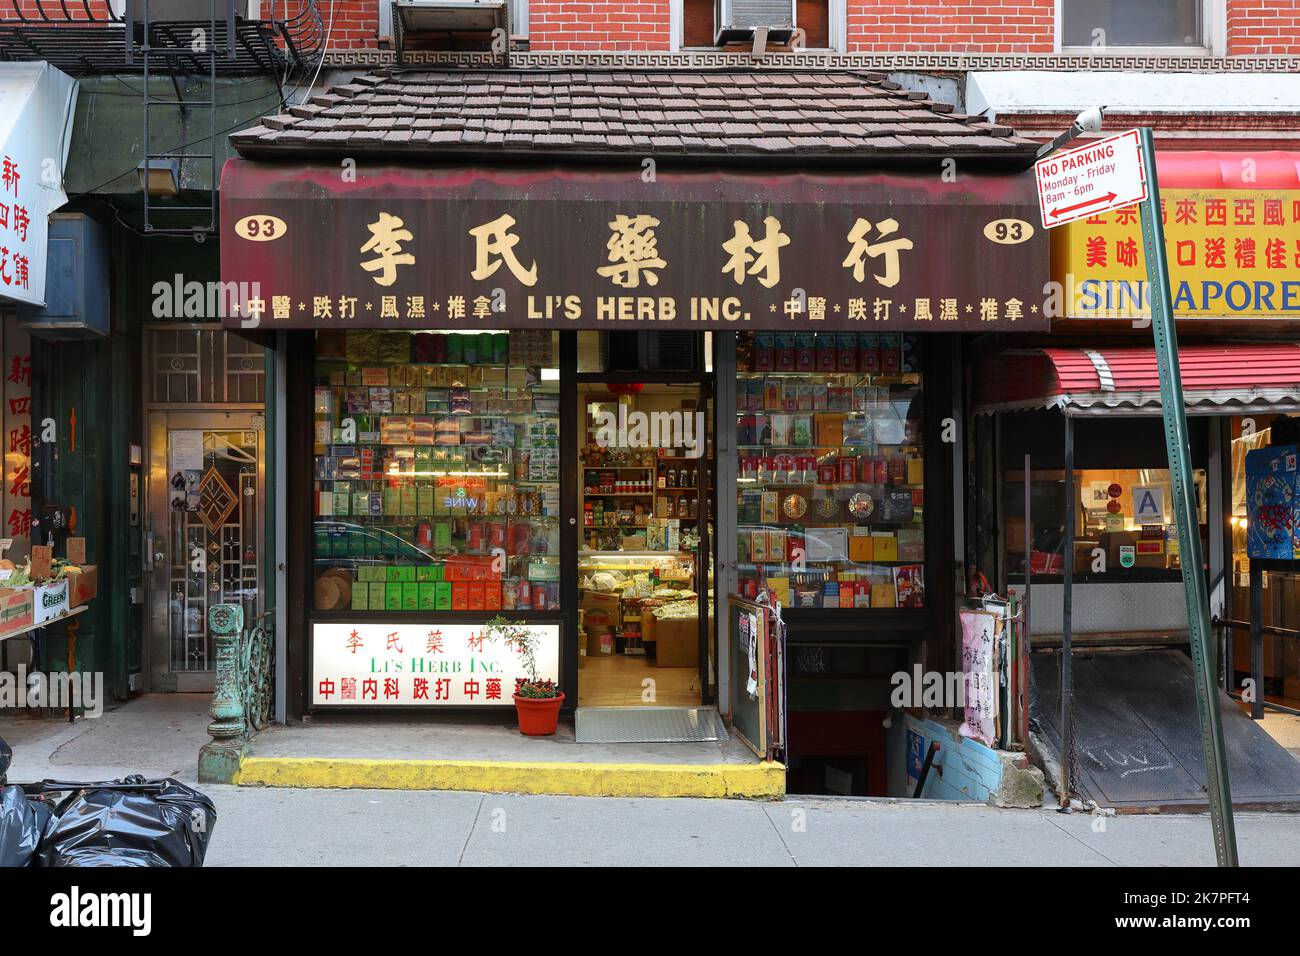 Li's Herbs Inc 李氏藥材行, 93 Elizabeth St, New York, NYC photo d'un magasin chinois de plantes médicinales dans le quartier chinois de Manhattan. Banque D'Images